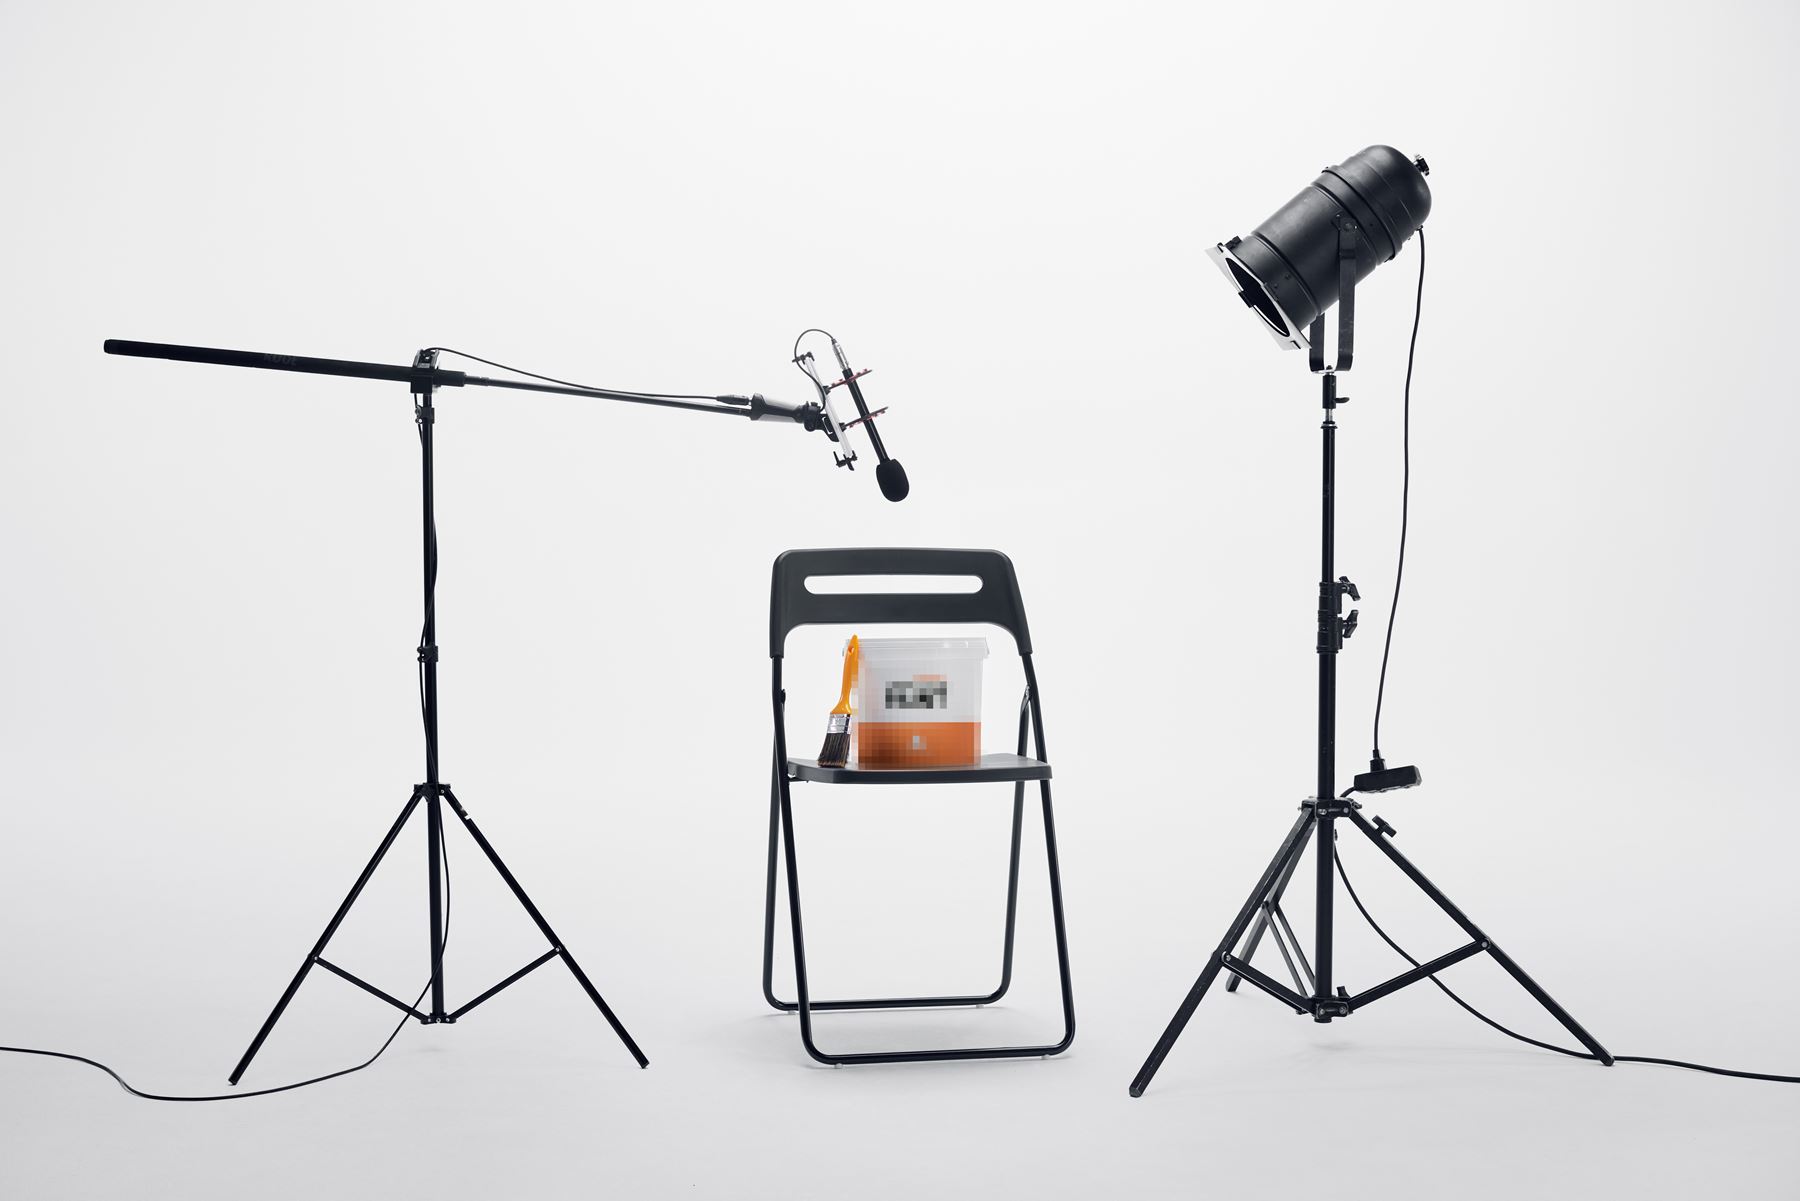 En suddad anonym målarfärgburk står på en stol med en mikrofon och lampa riktad mot sig. 